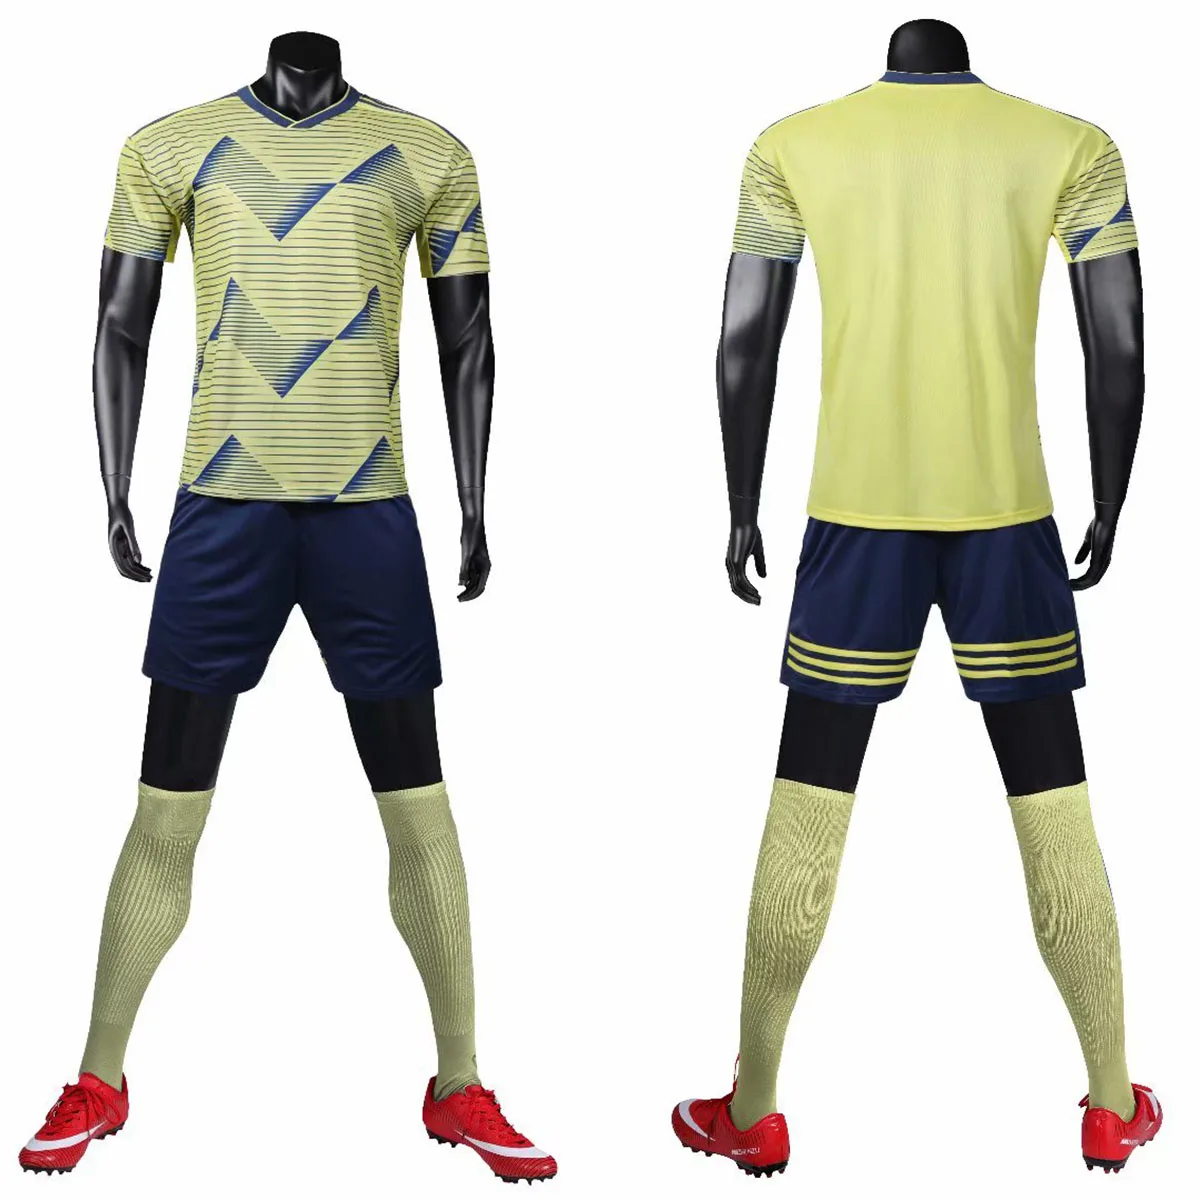 Мужская Детская футбольная рубашка, трикотажная Футбольная форма без надписей, толстовка для футболиста, тренировочный костюм для футбольной команды